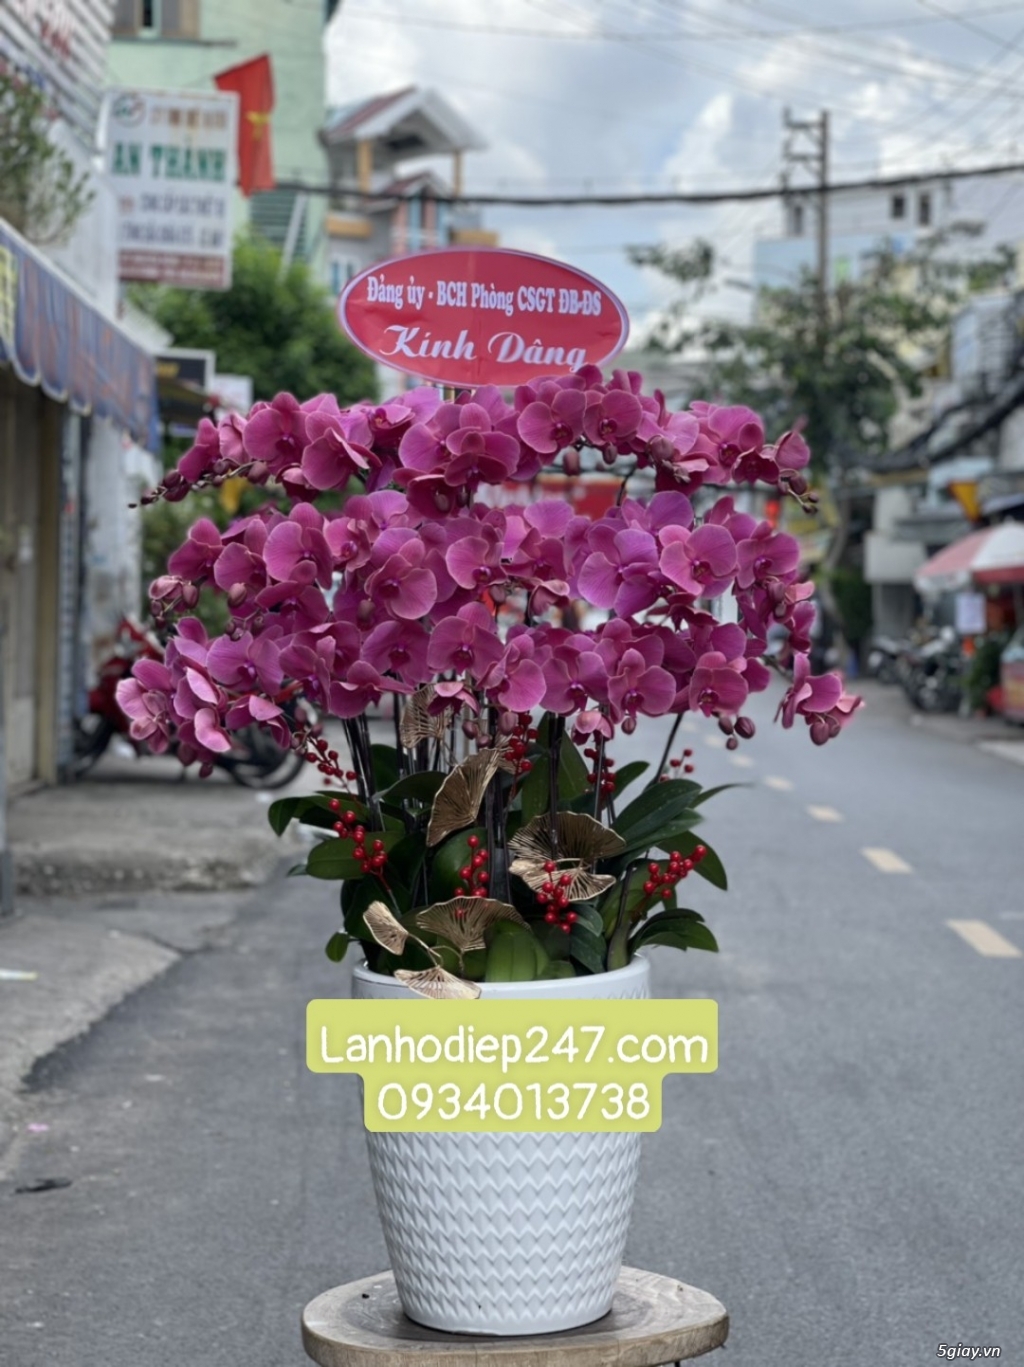 Bạn muốn tìm Shop Lan Hồ Điệp cao cấp TPHCM - Shop Hoa Lan 247 Sài Gòn - 13